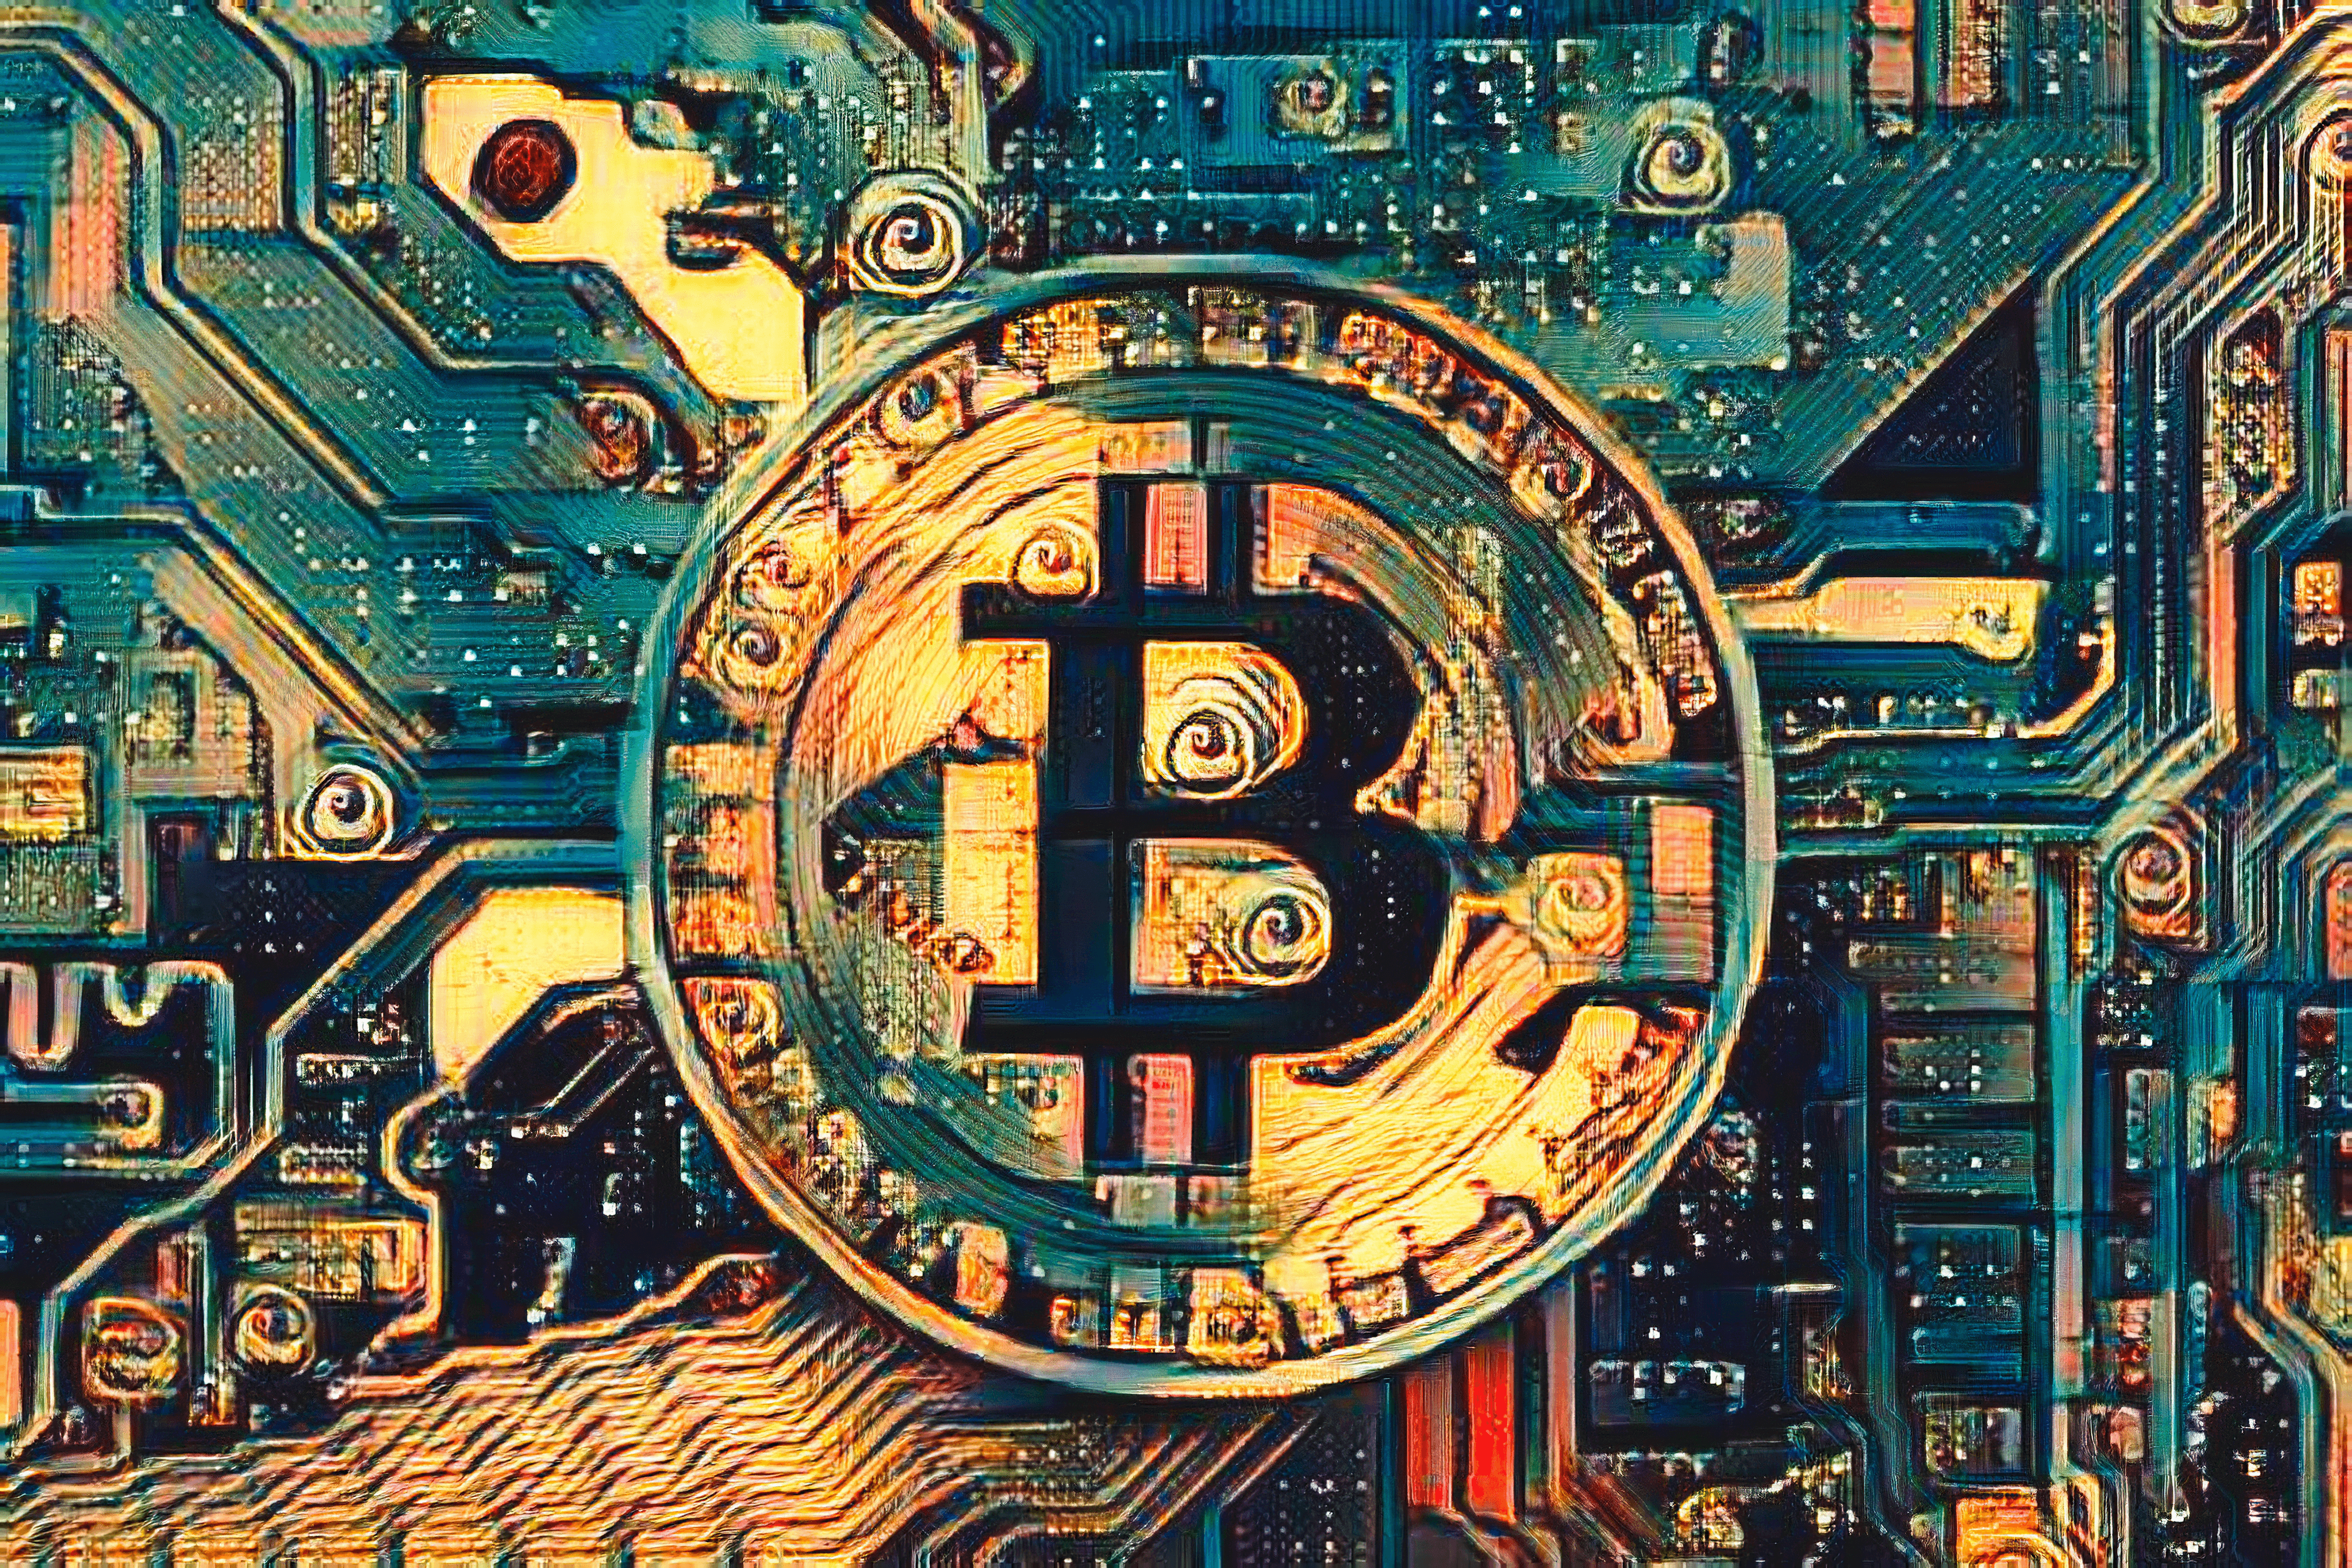 Bitcoin as seen by Salvador Dali